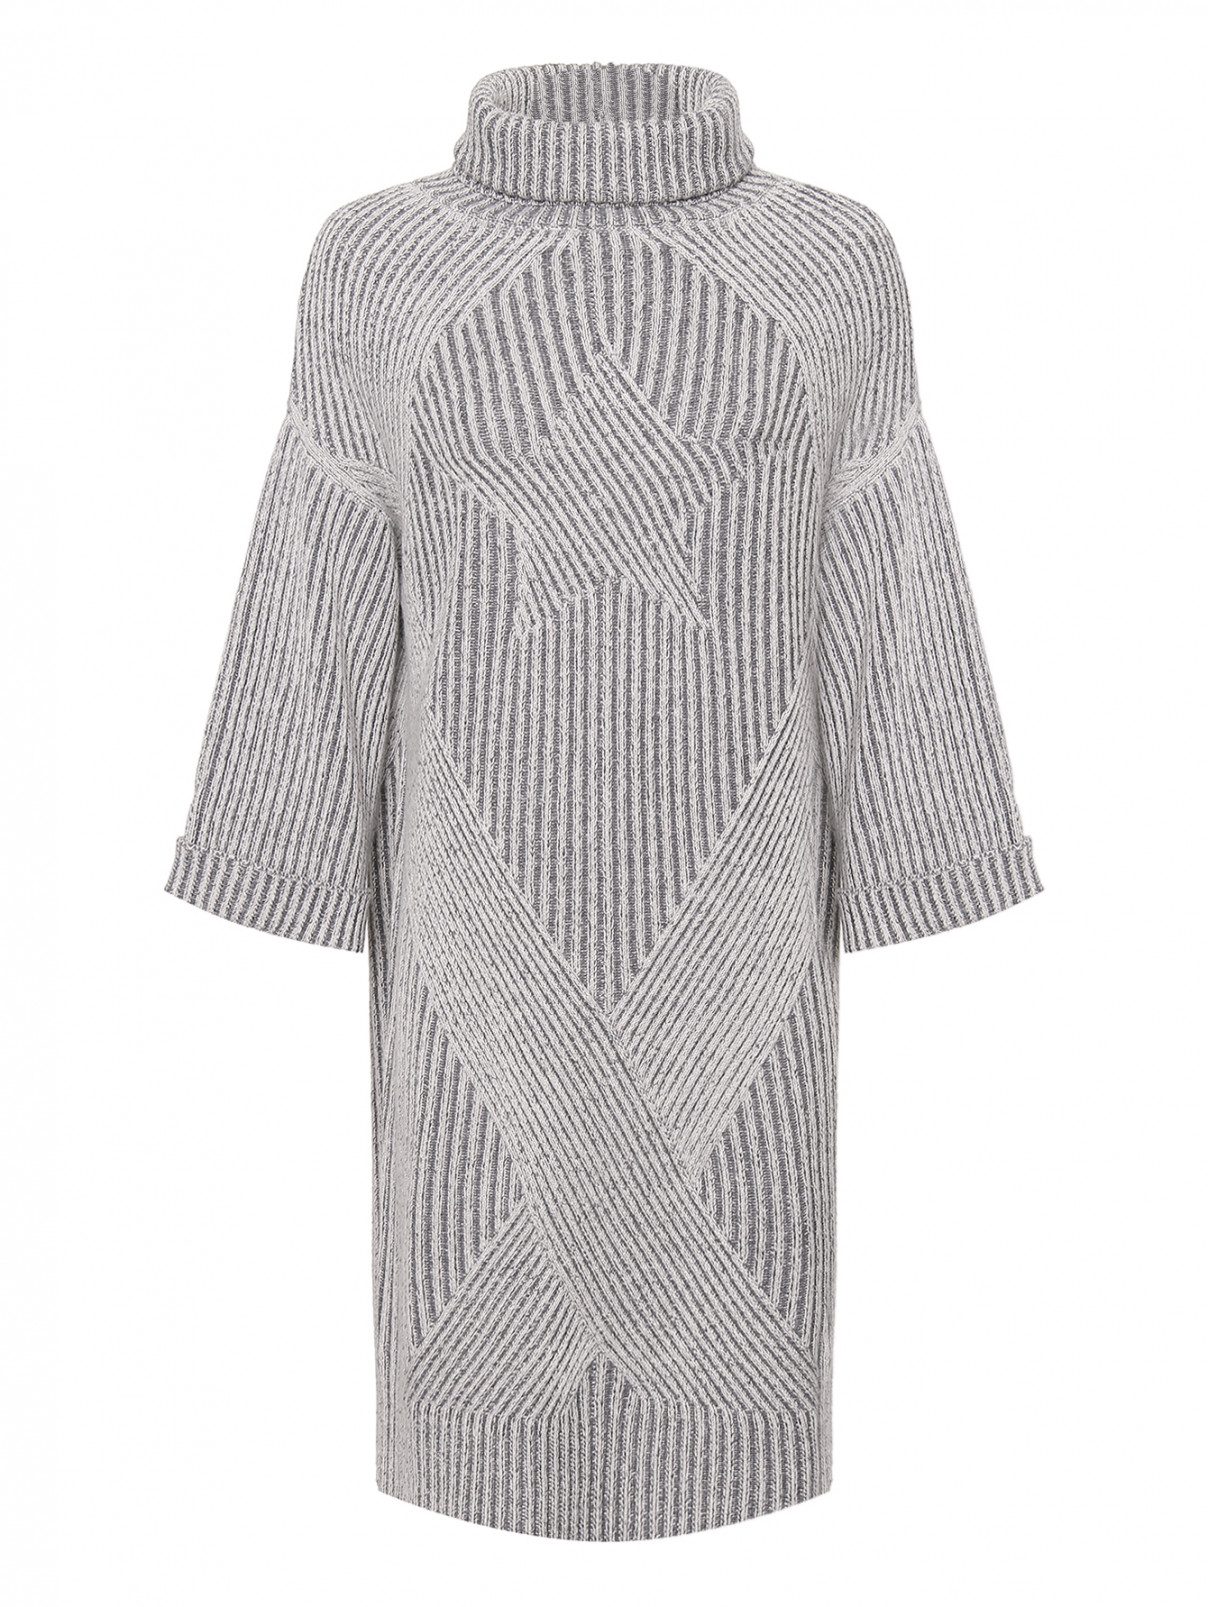 Трикотажное платье из шерсти и кашемира Lorena Antoniazzi  –  Общий вид  – Цвет:  Серый